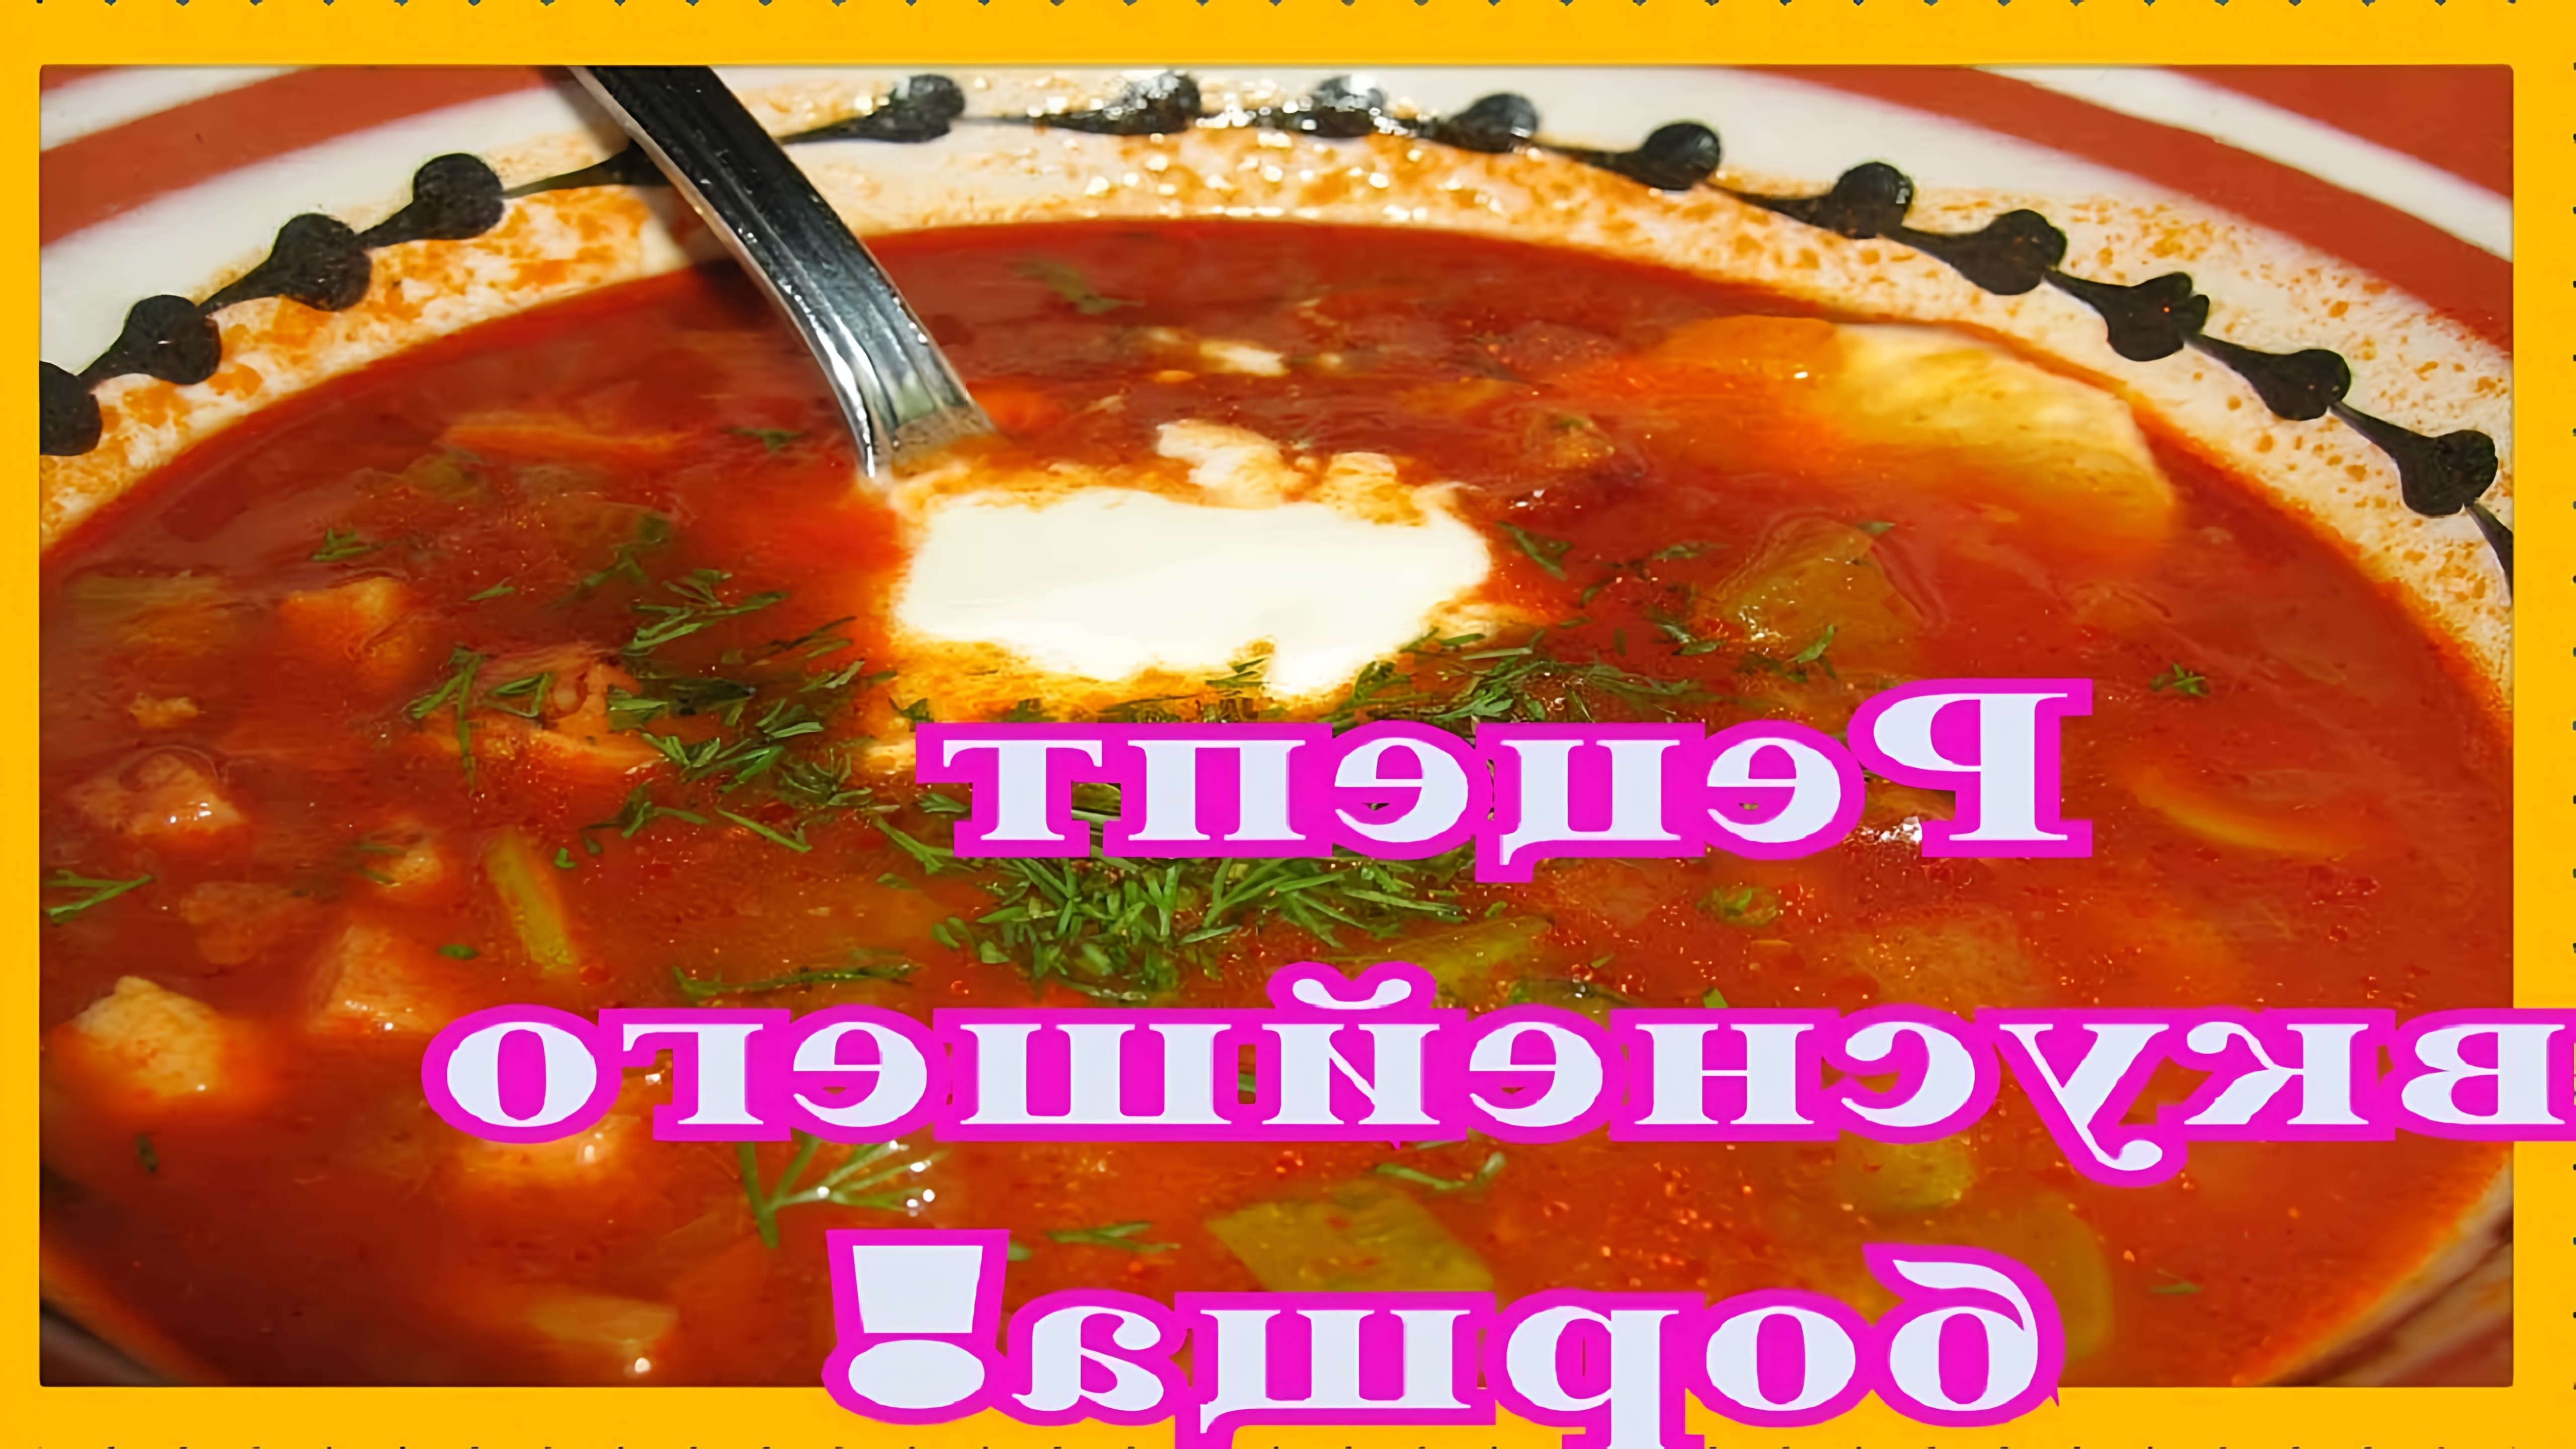 В этом видео демонстрируется рецепт приготовления борща с помидорами